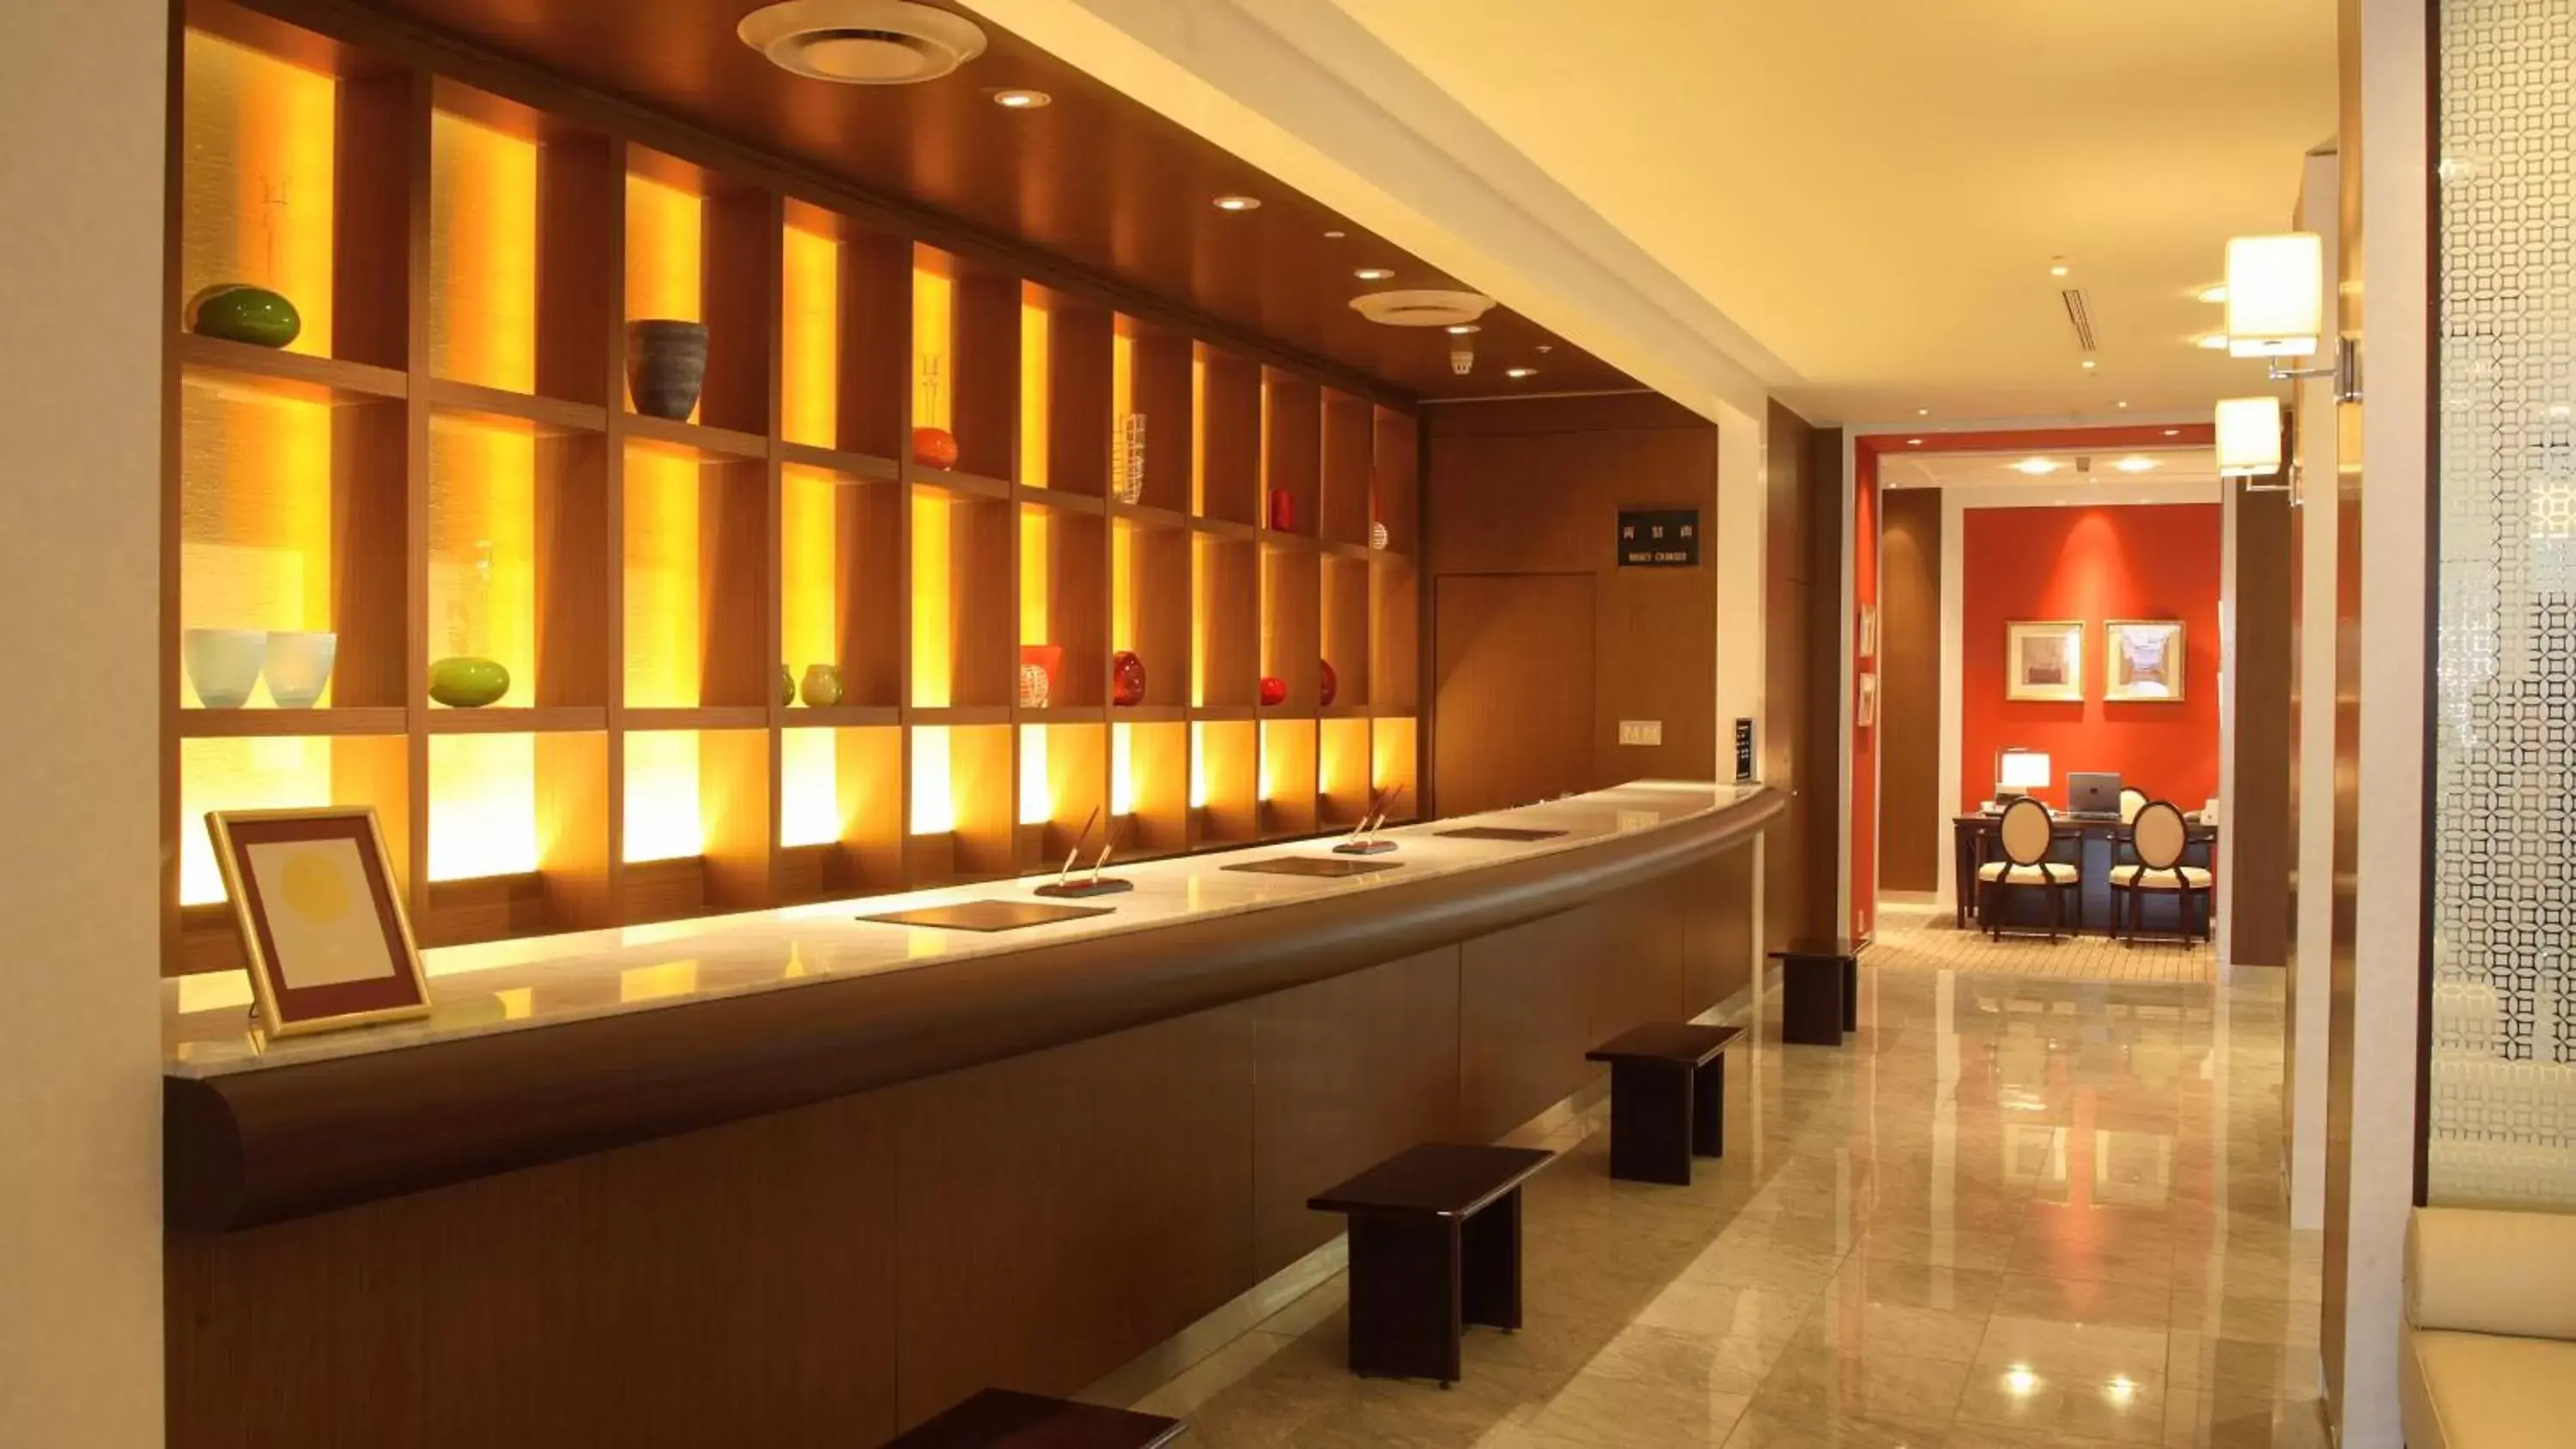 Lobby or reception, Lobby/Reception in Premier Hotel Nakajima Park Sapporo